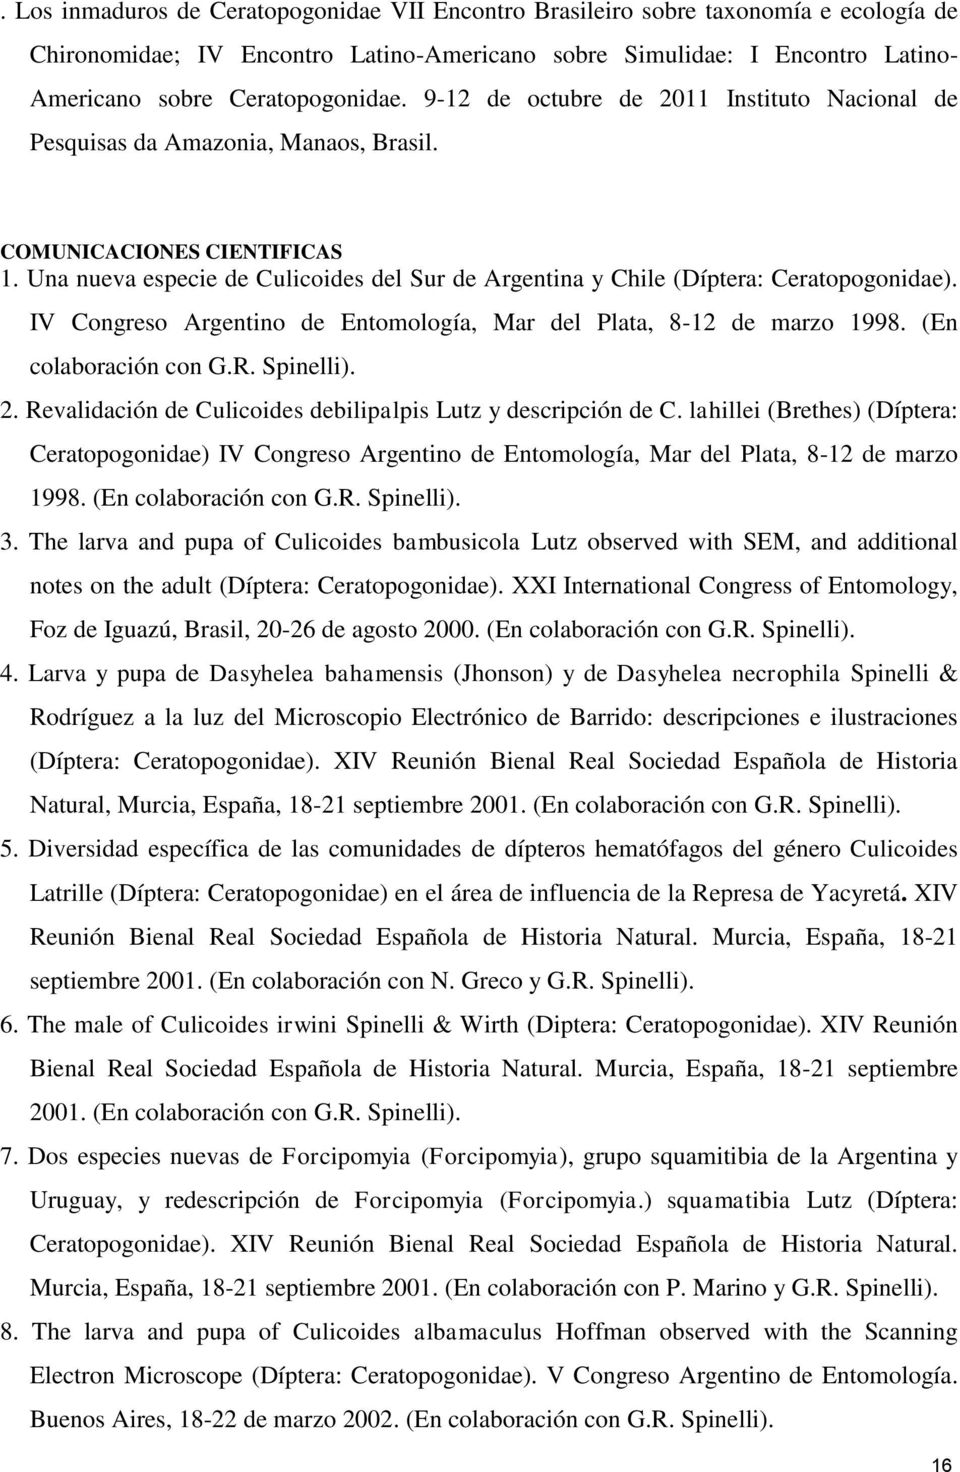 Una nueva especie de Culicoides del Sur de Argentina y Chile (Díptera: Ceratopogonidae). IV Congreso Argentino de Entomología, Mar del Plata, 8-12 de marzo 1998. (En colaboración con G.R. Spinelli).